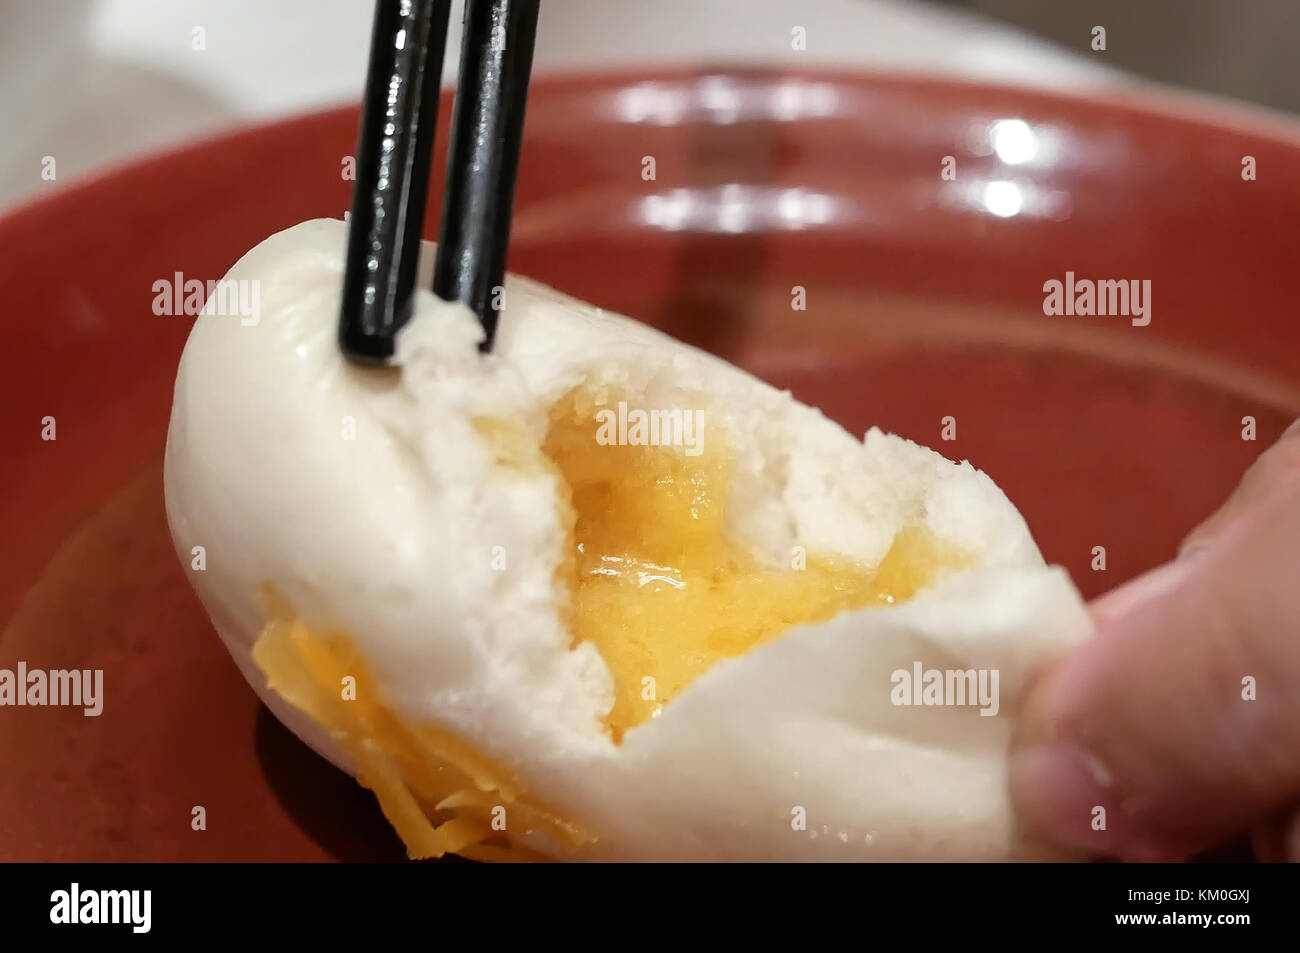 Motion of people eating steamed egg yolk bun inside restaurant Stock Photo